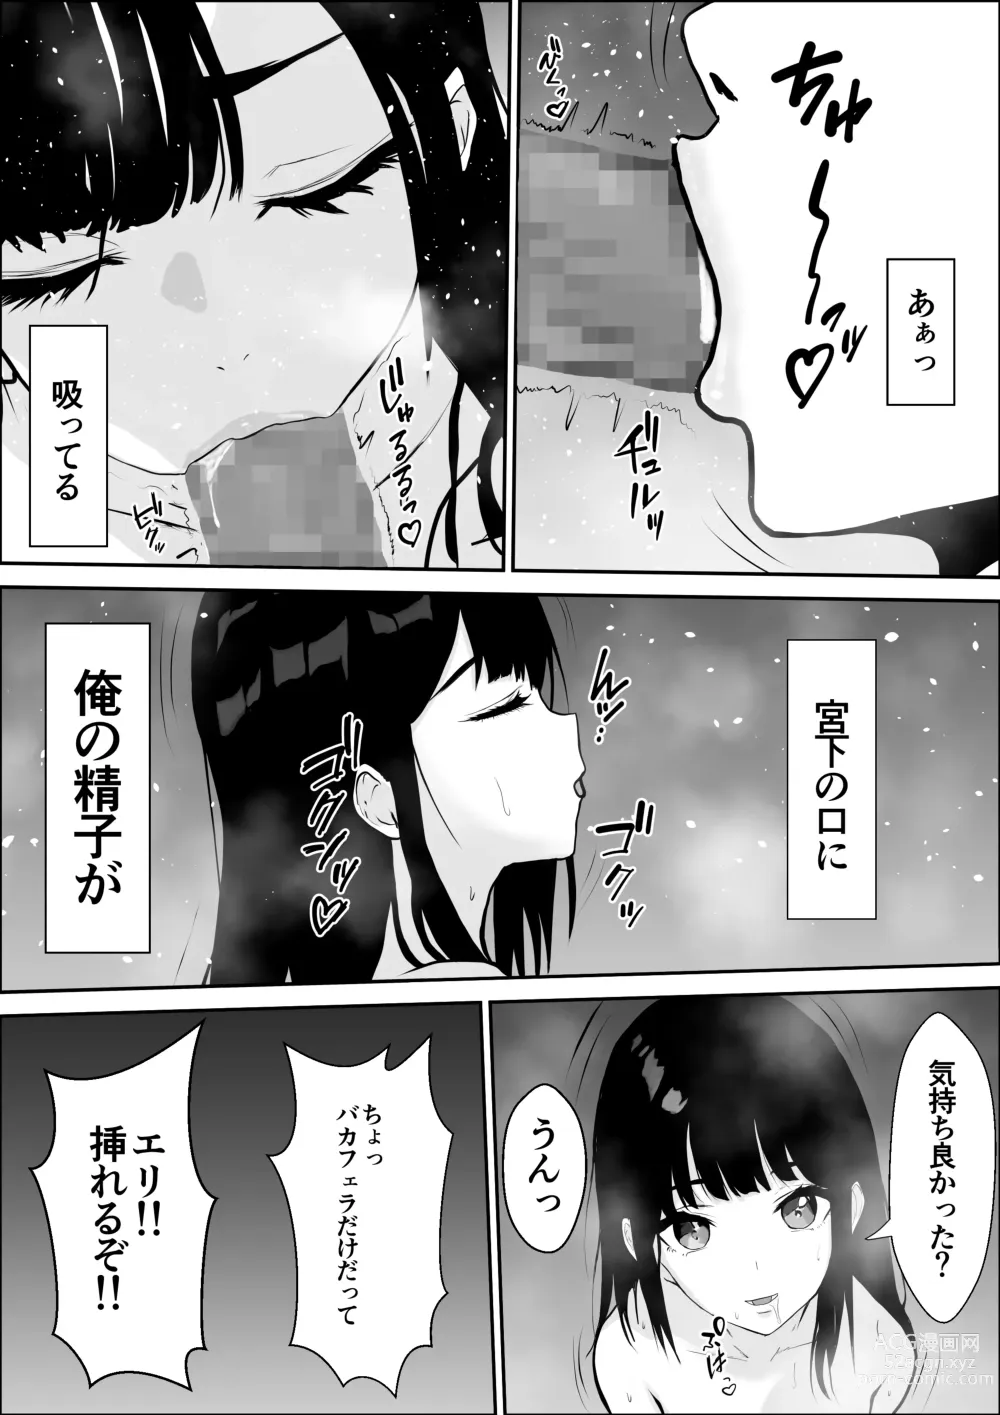 Page 46 of doujinshi Kyoumi no Mukougawa 2